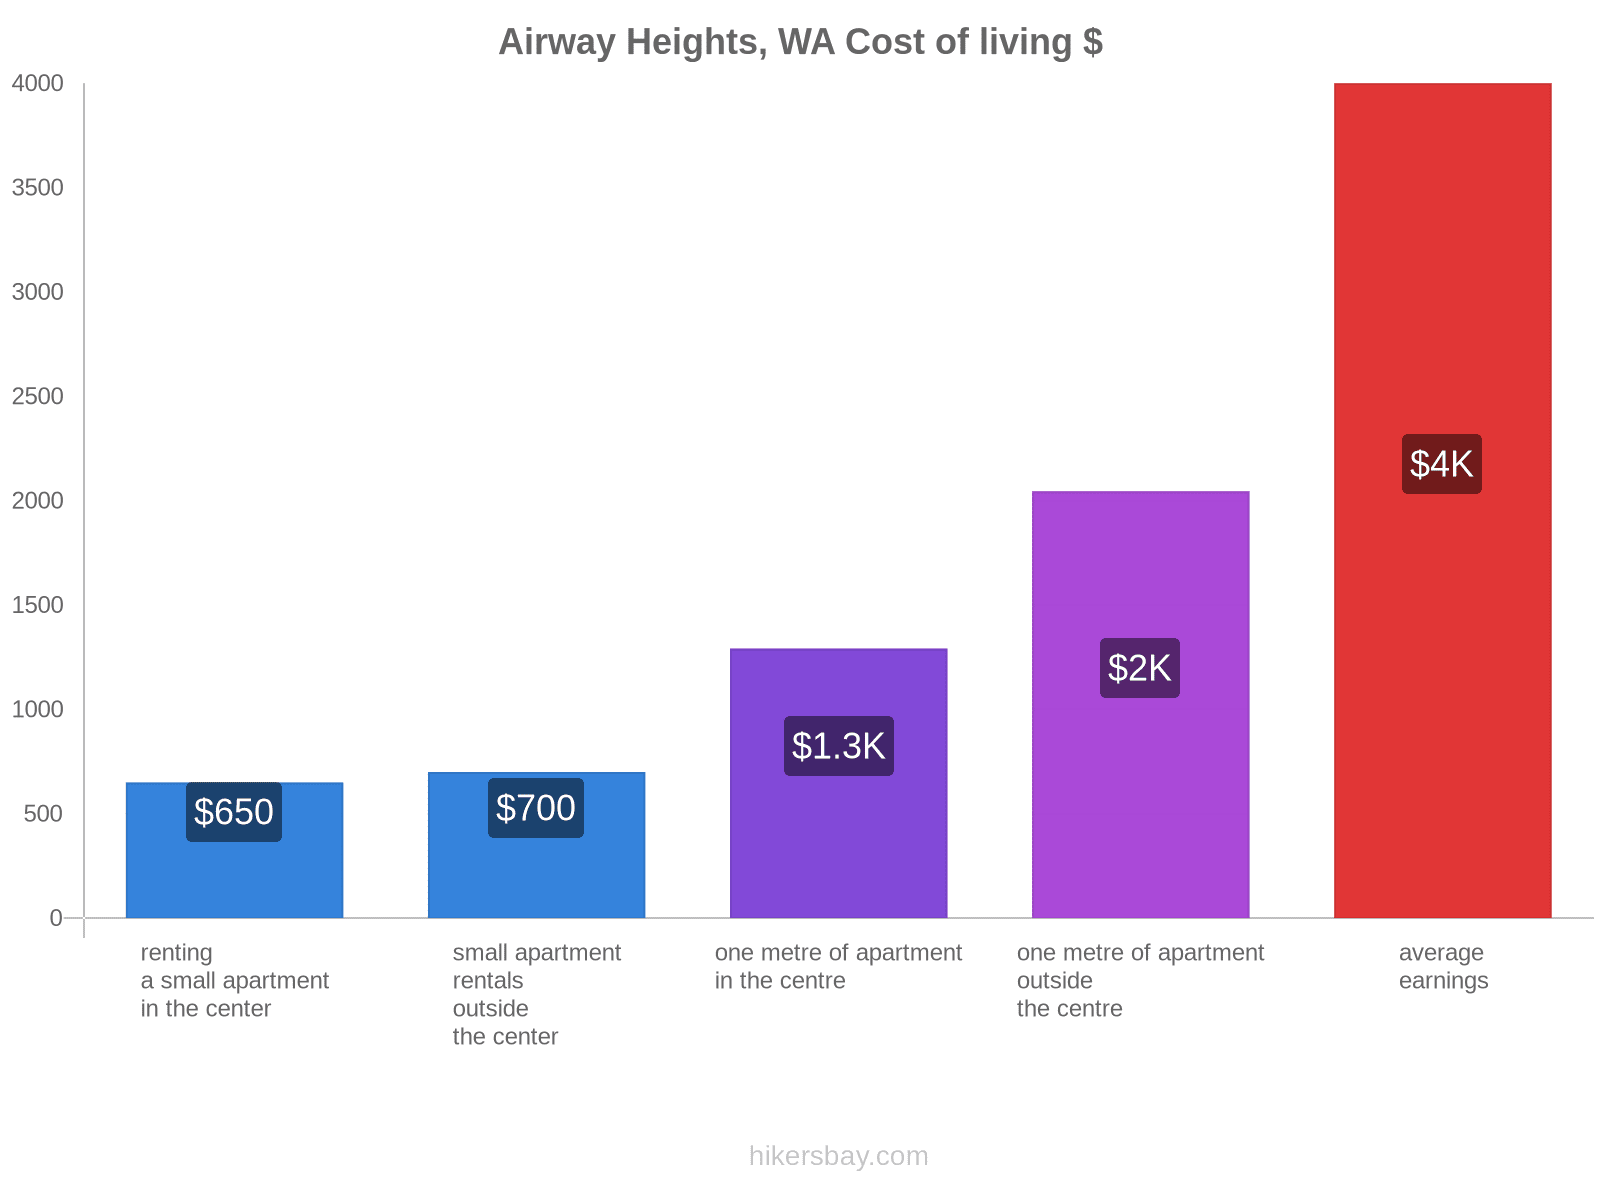 Airway Heights, WA cost of living hikersbay.com